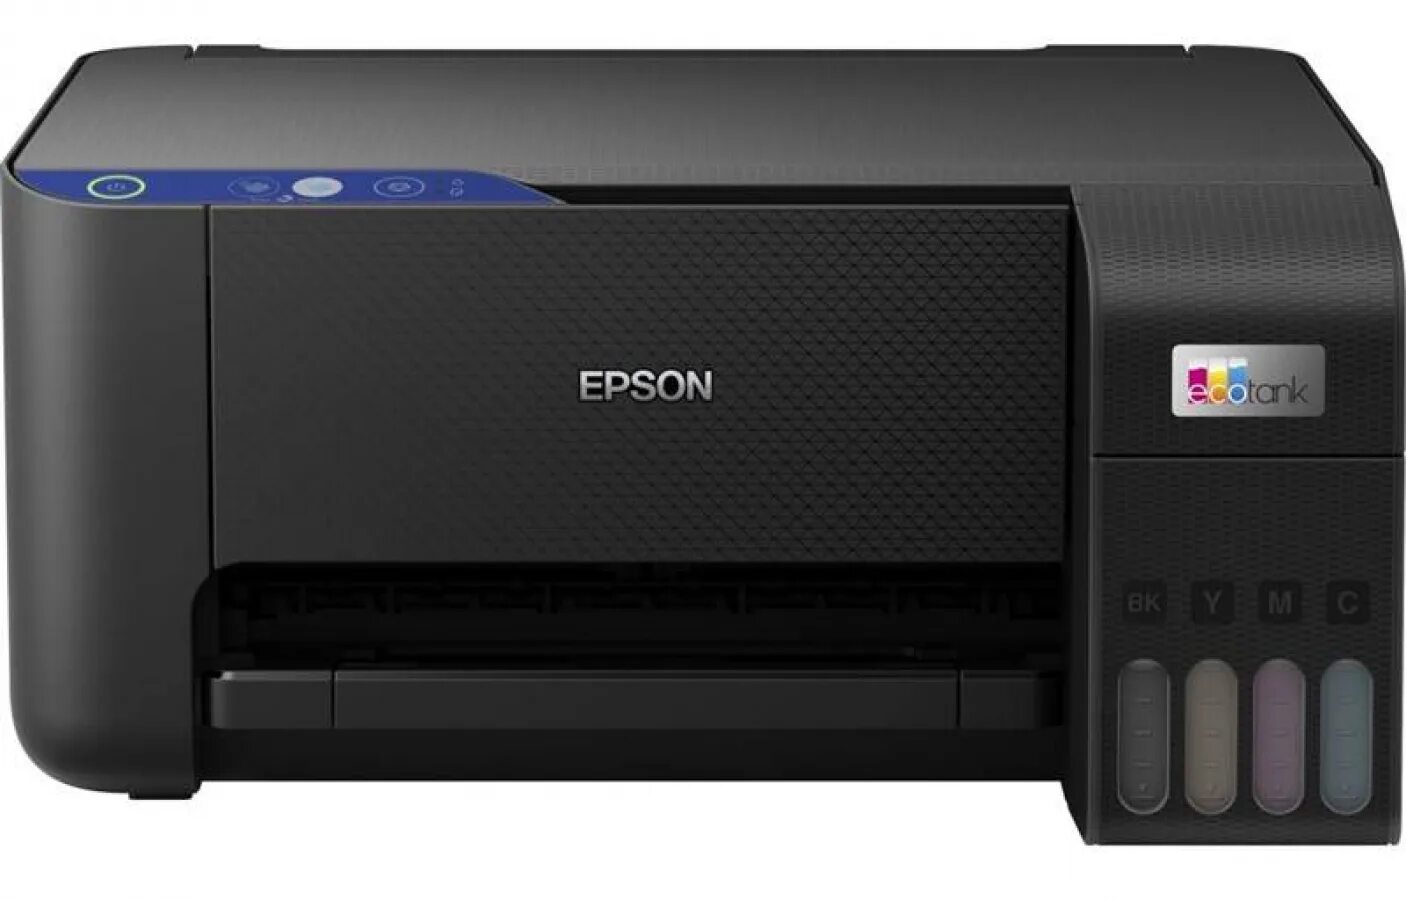 Epson l3250